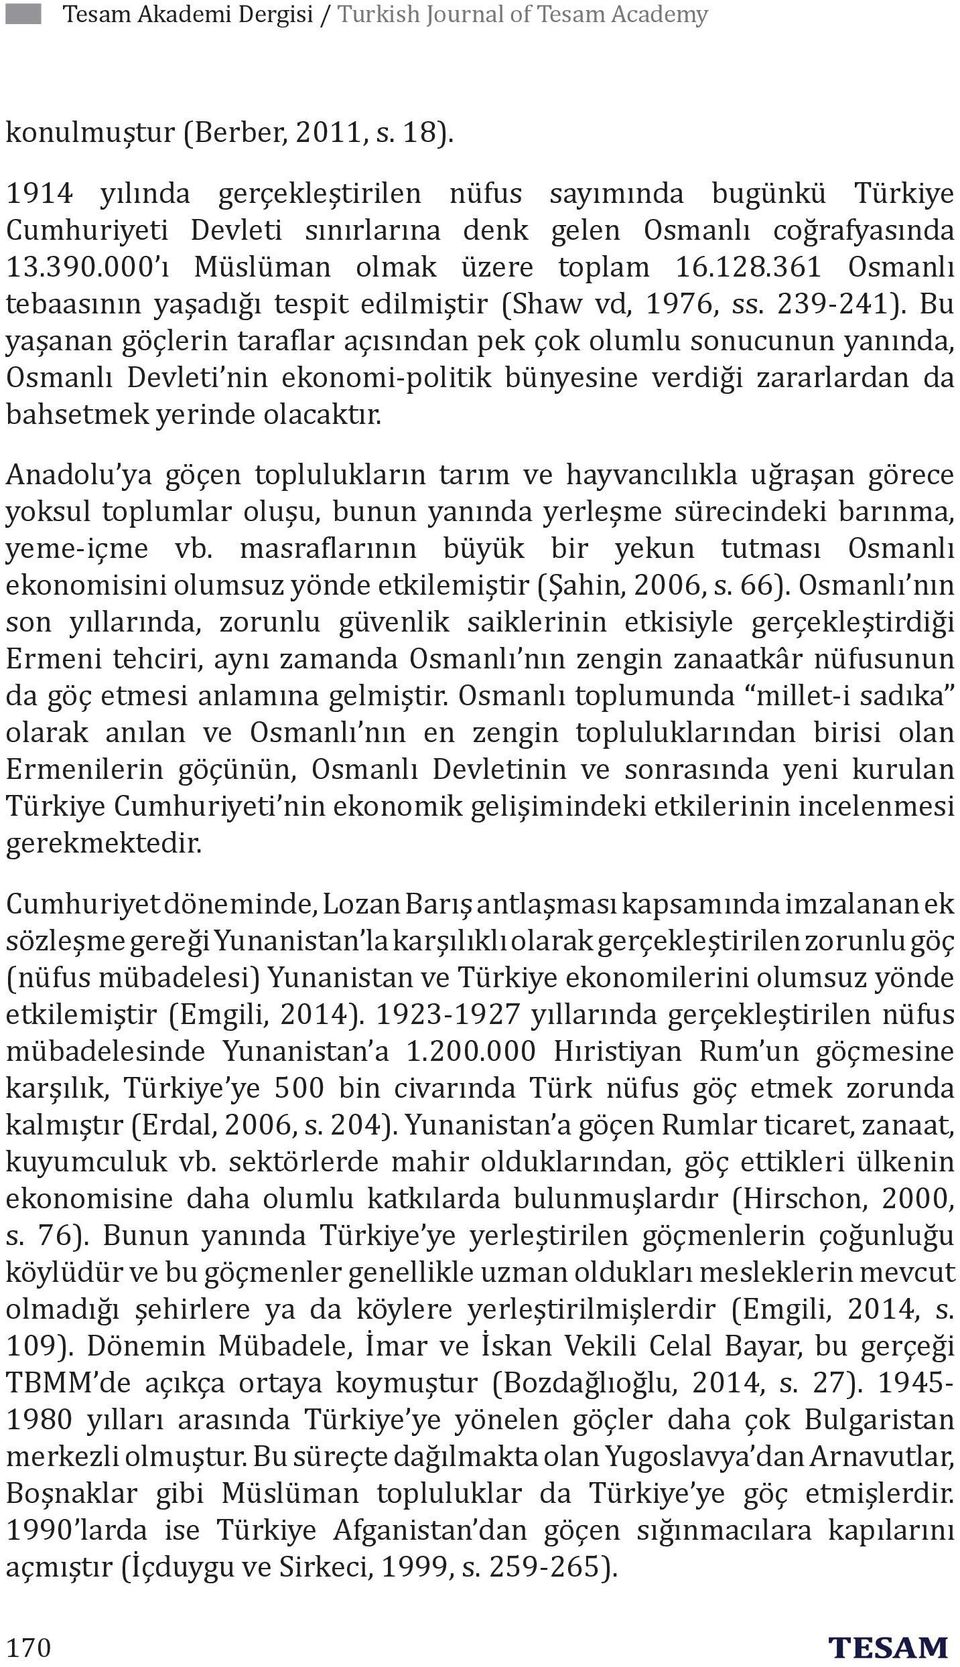 361 Osmanlı tebaasının yaşadığı tespit edilmiştir (Shaw vd, 1976, ss. 239-241).